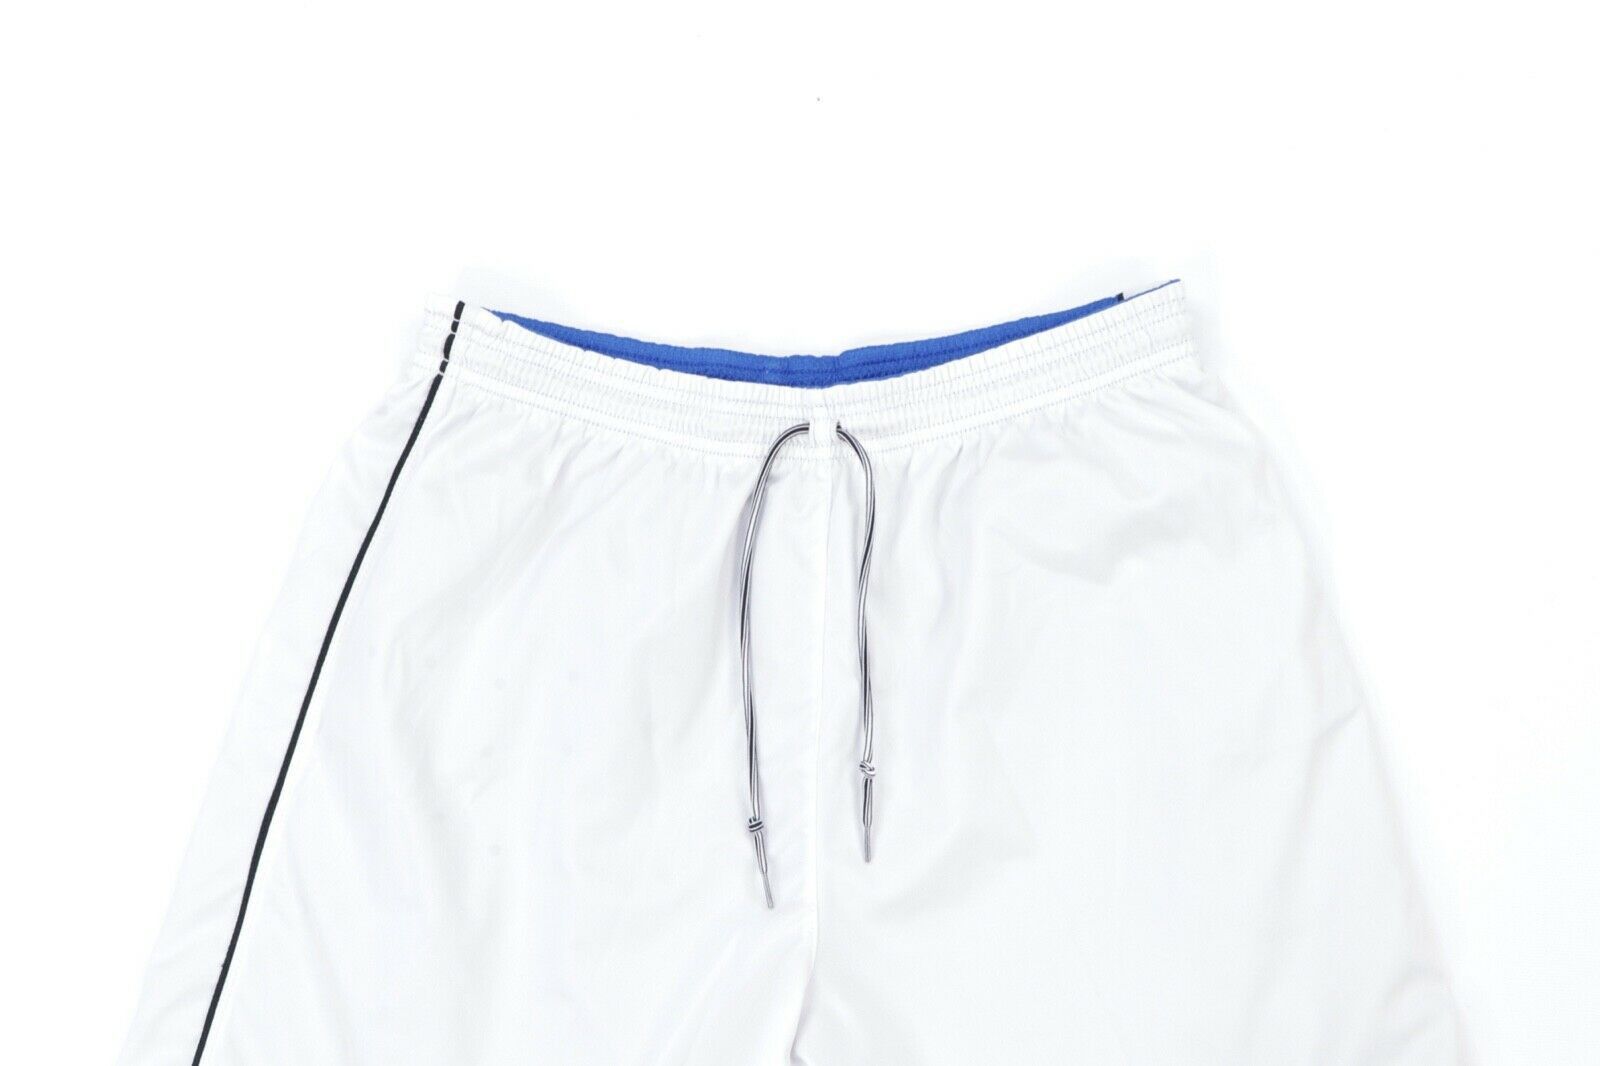 Nike Vintage Nike Total 90 Reversible Soccer Shorts Blue White M Size US 30 / EU 46 - 7 Thumbnail